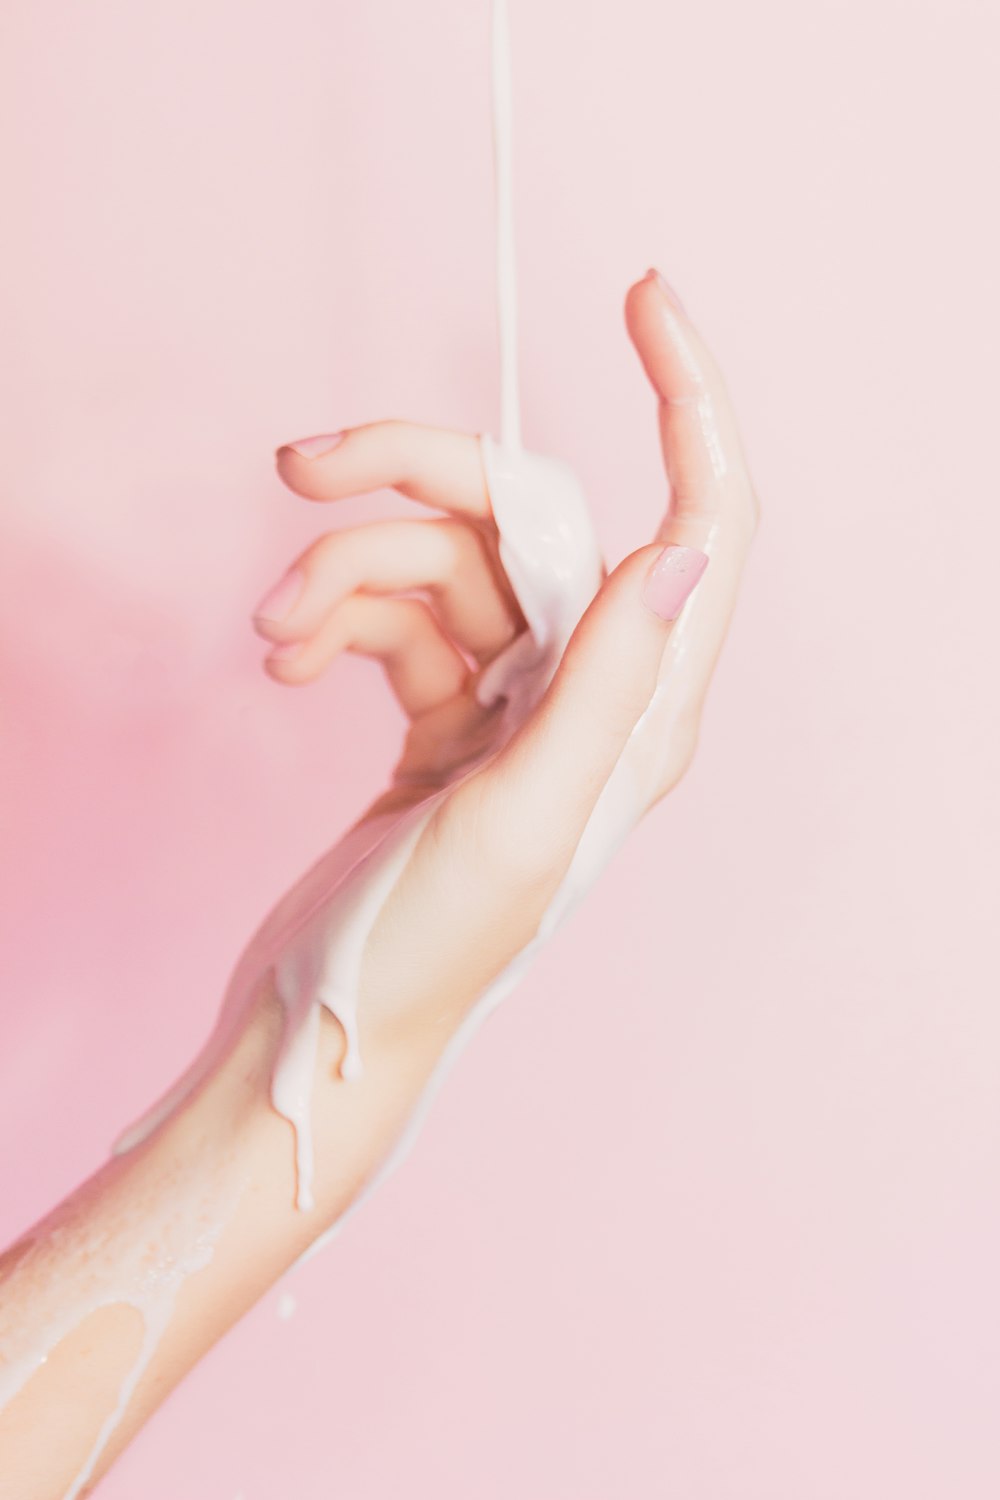 la main d’une femme tenant un flacon de lotion